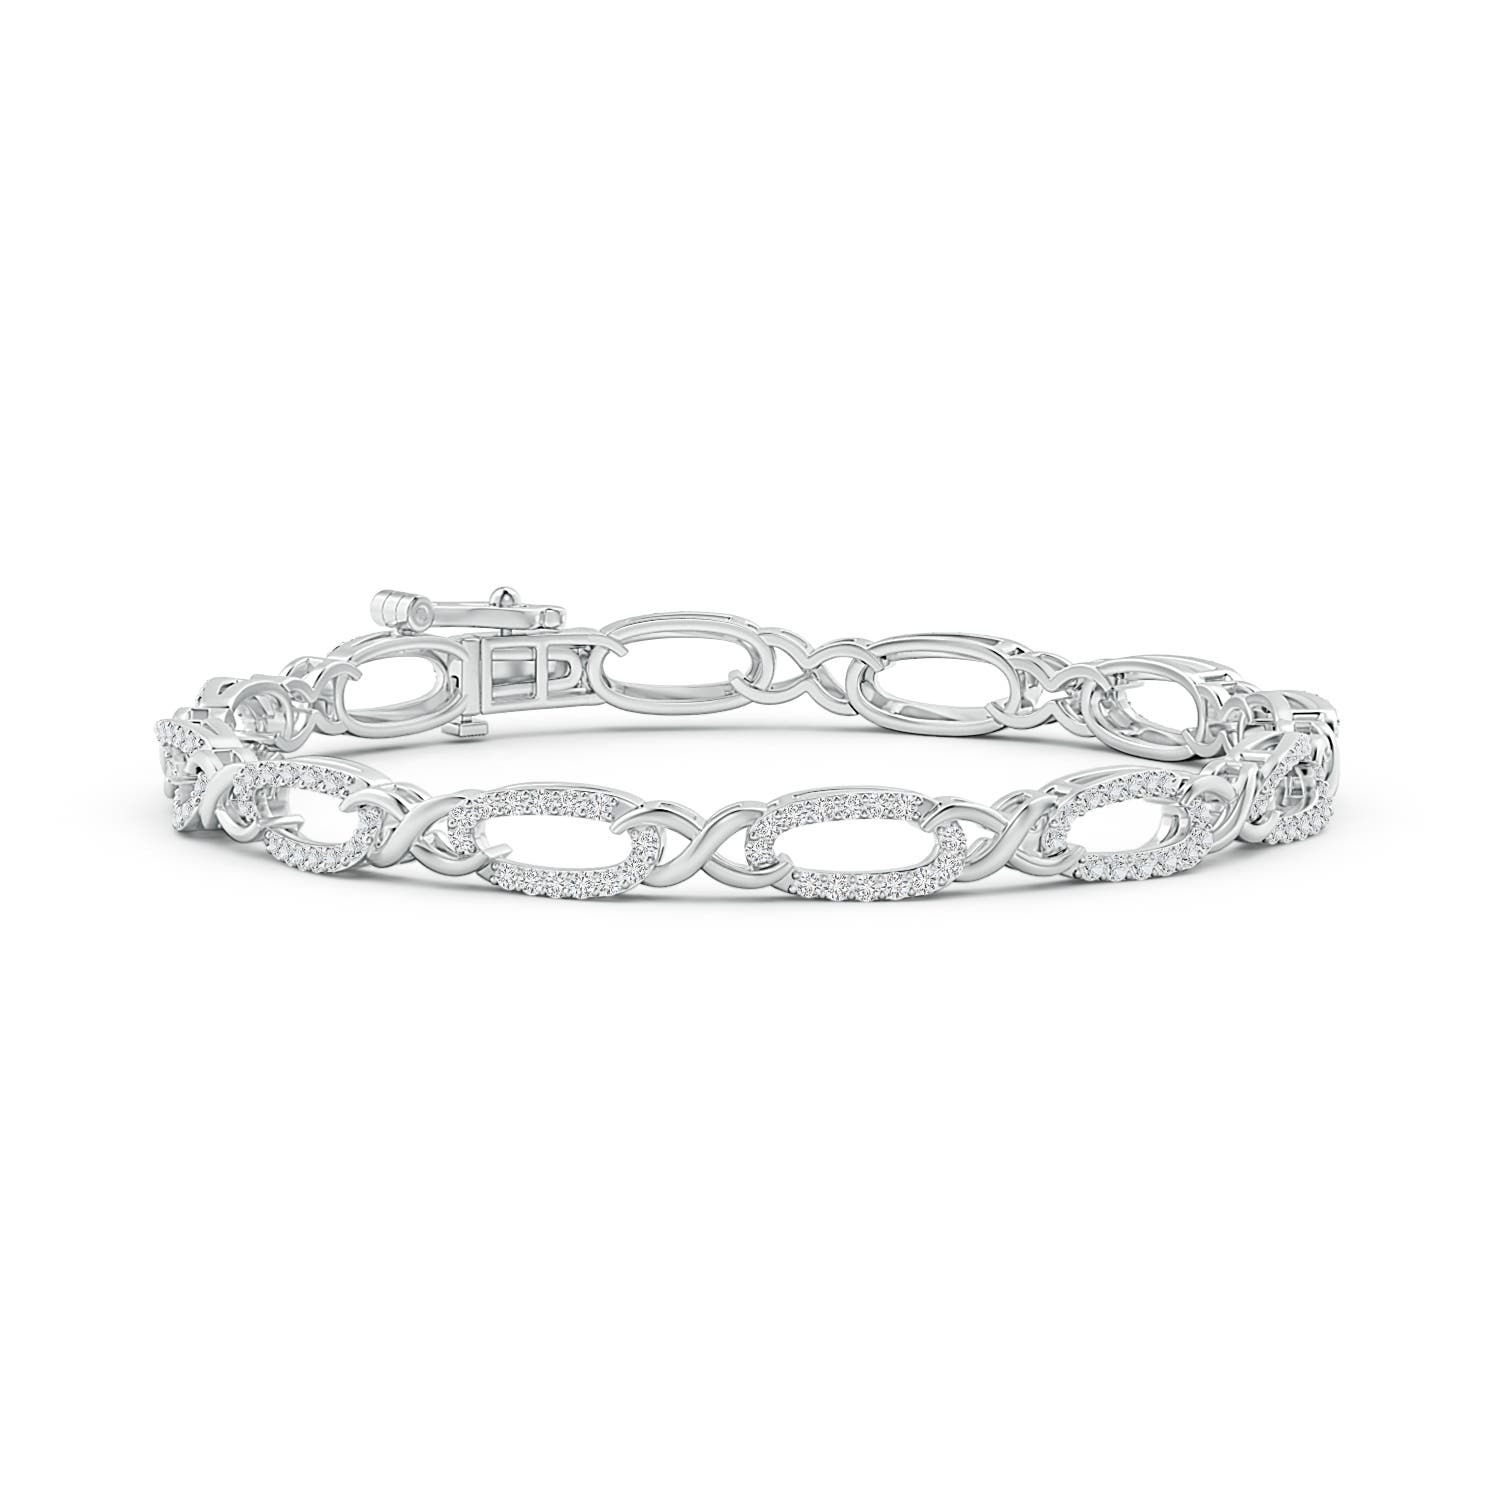 Buy Designs & You Silver Plated American Diamond Studded Bangle Style  Bracelet - Bracelet for Women 25188570 | Myntra